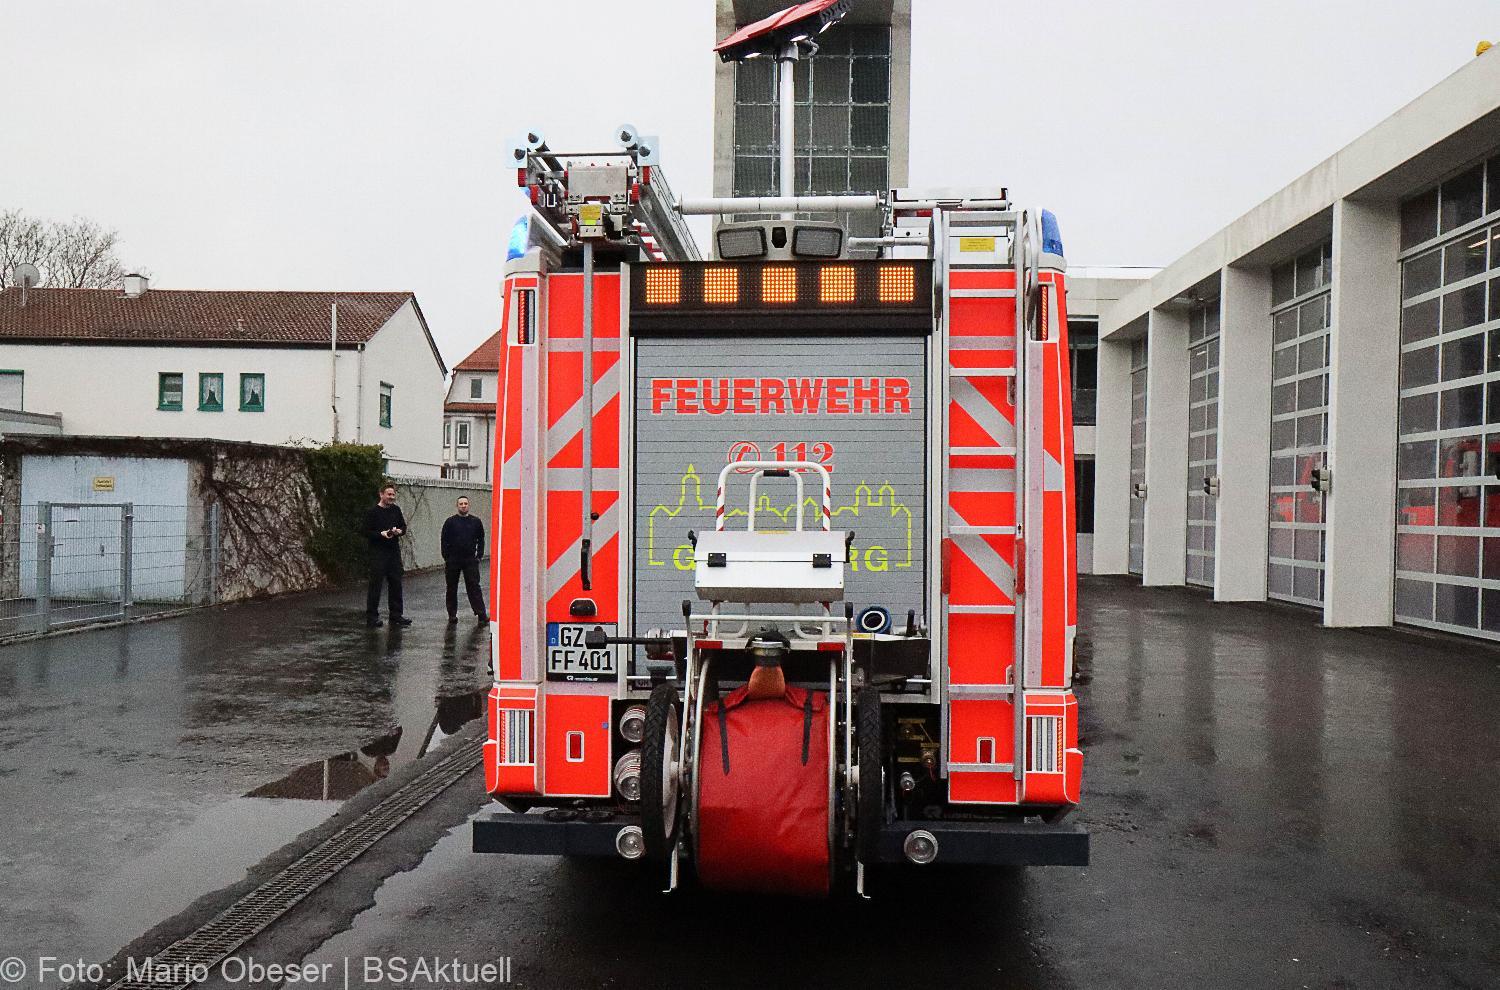 HLF20 Strasse Feuerwehr Guenzburg 2021 22